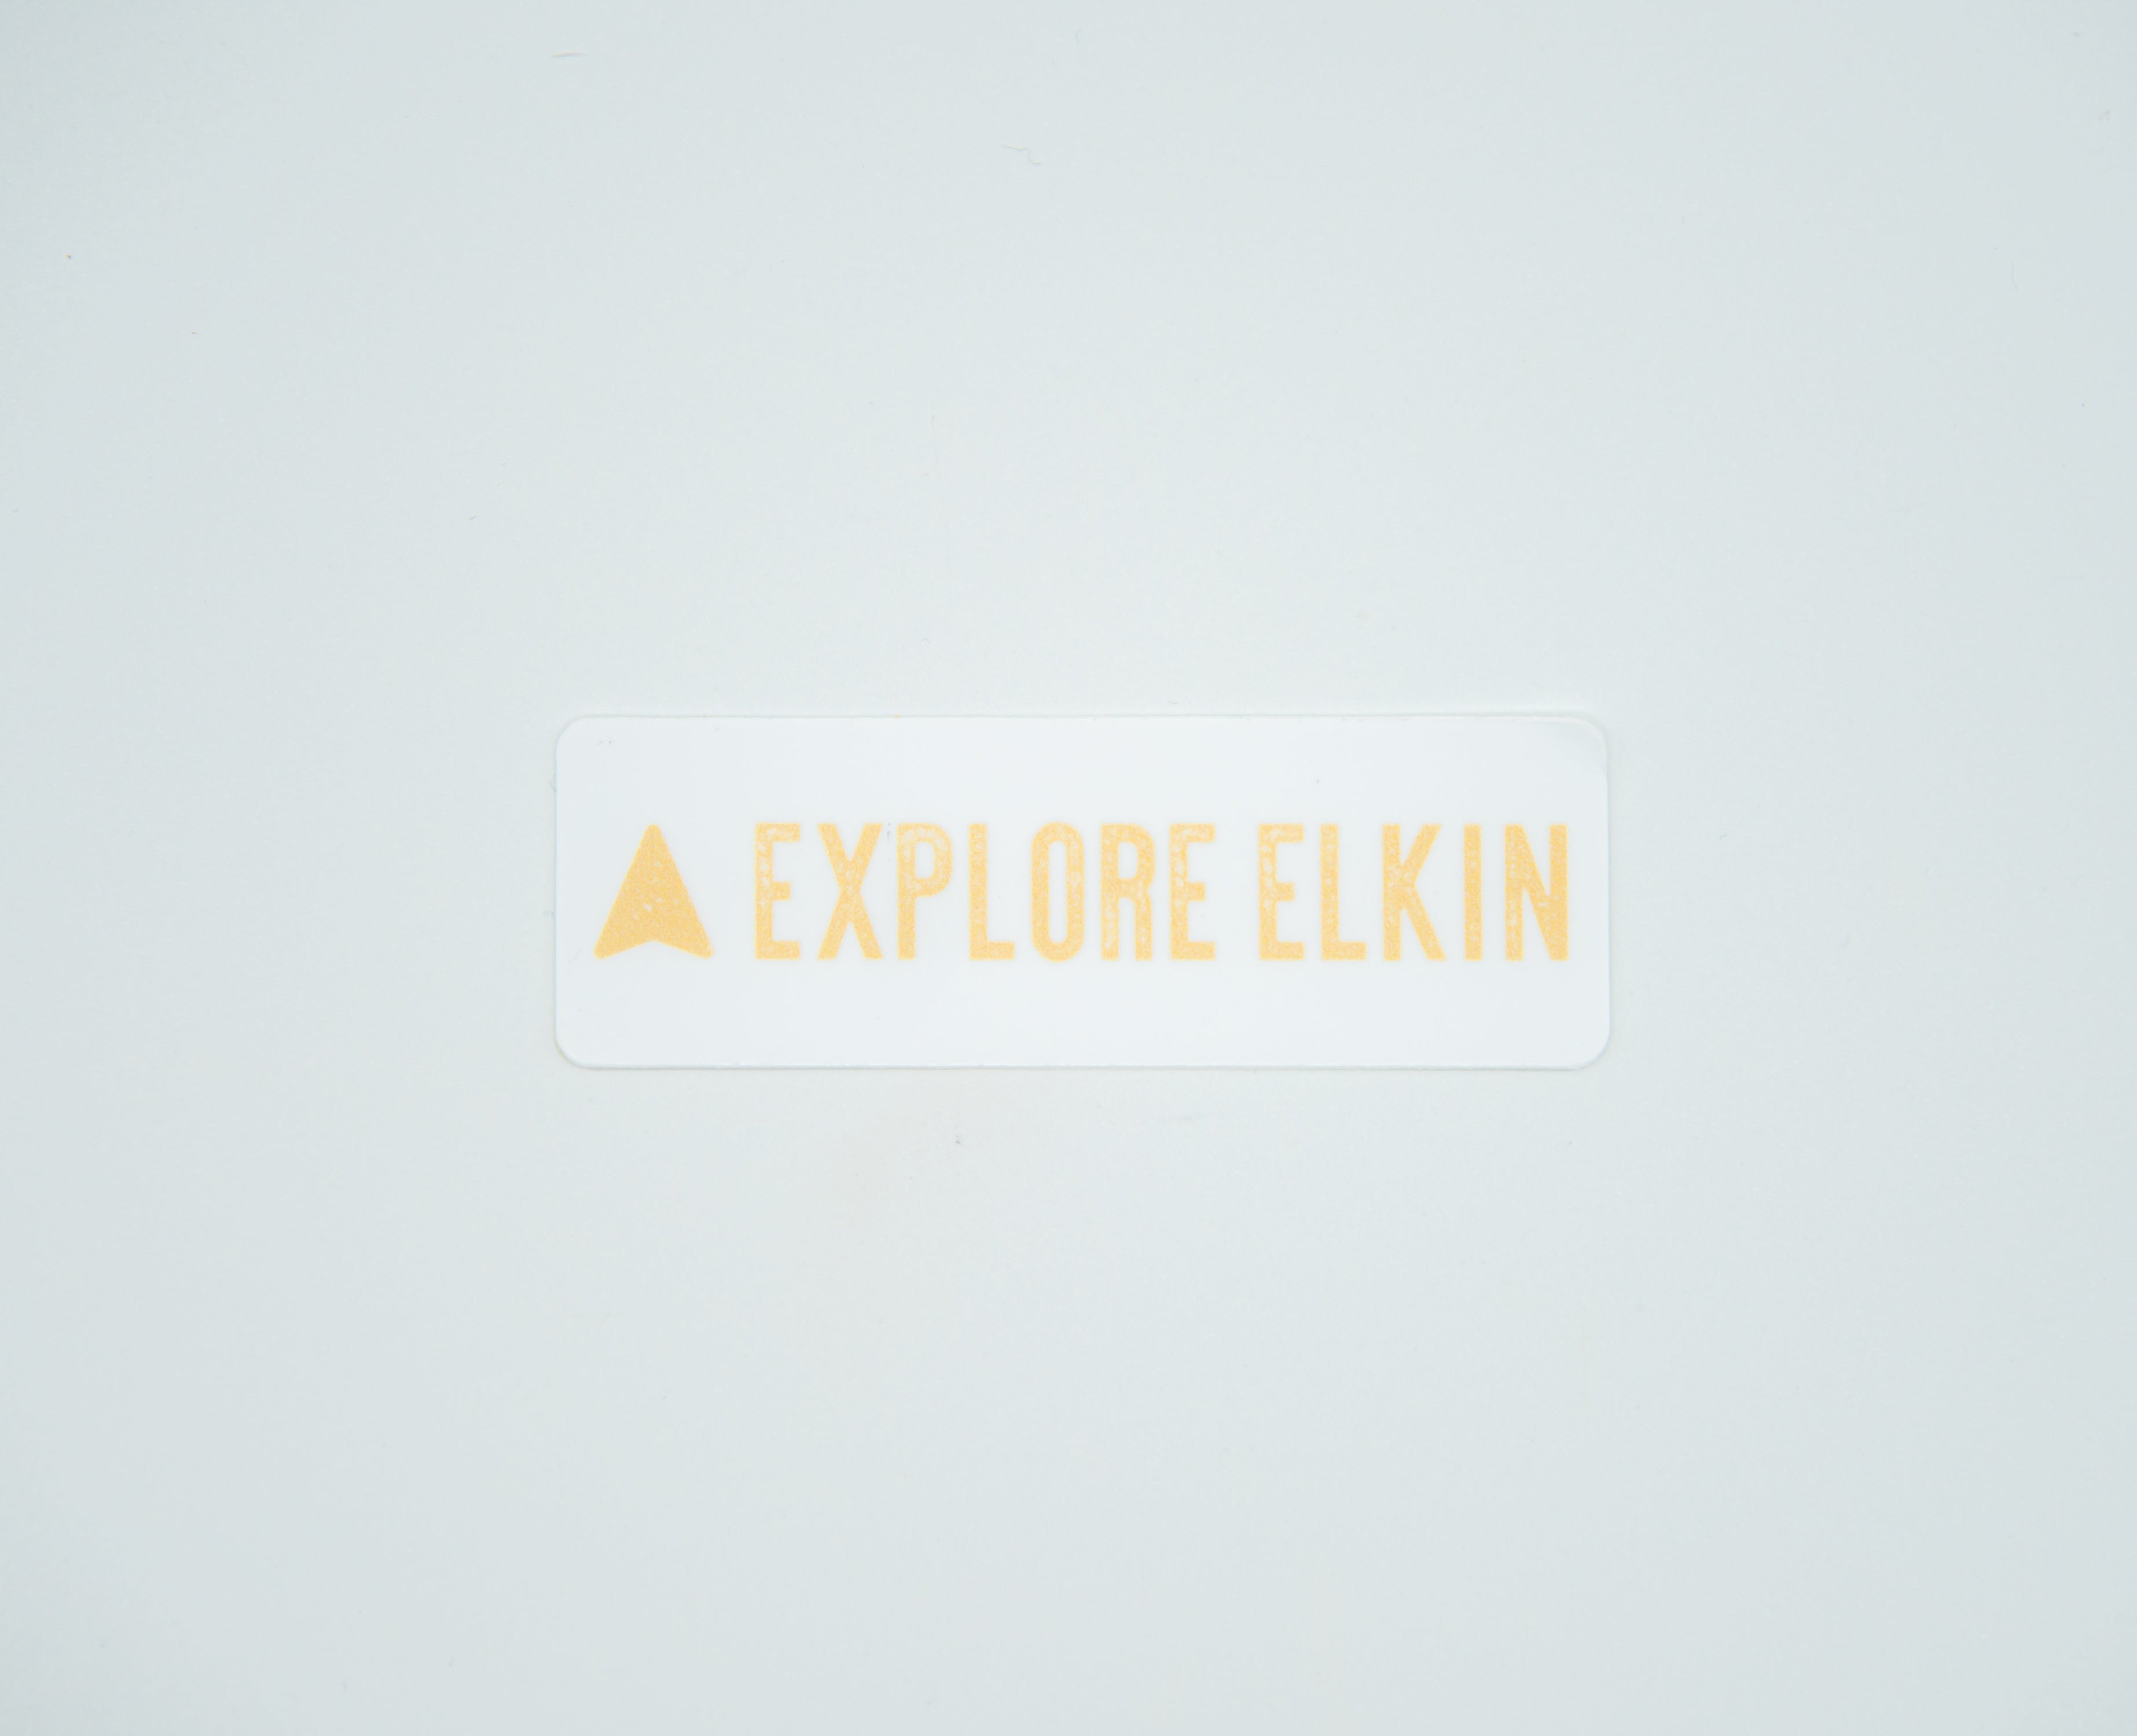 Explore Elkin Arrow Sticker